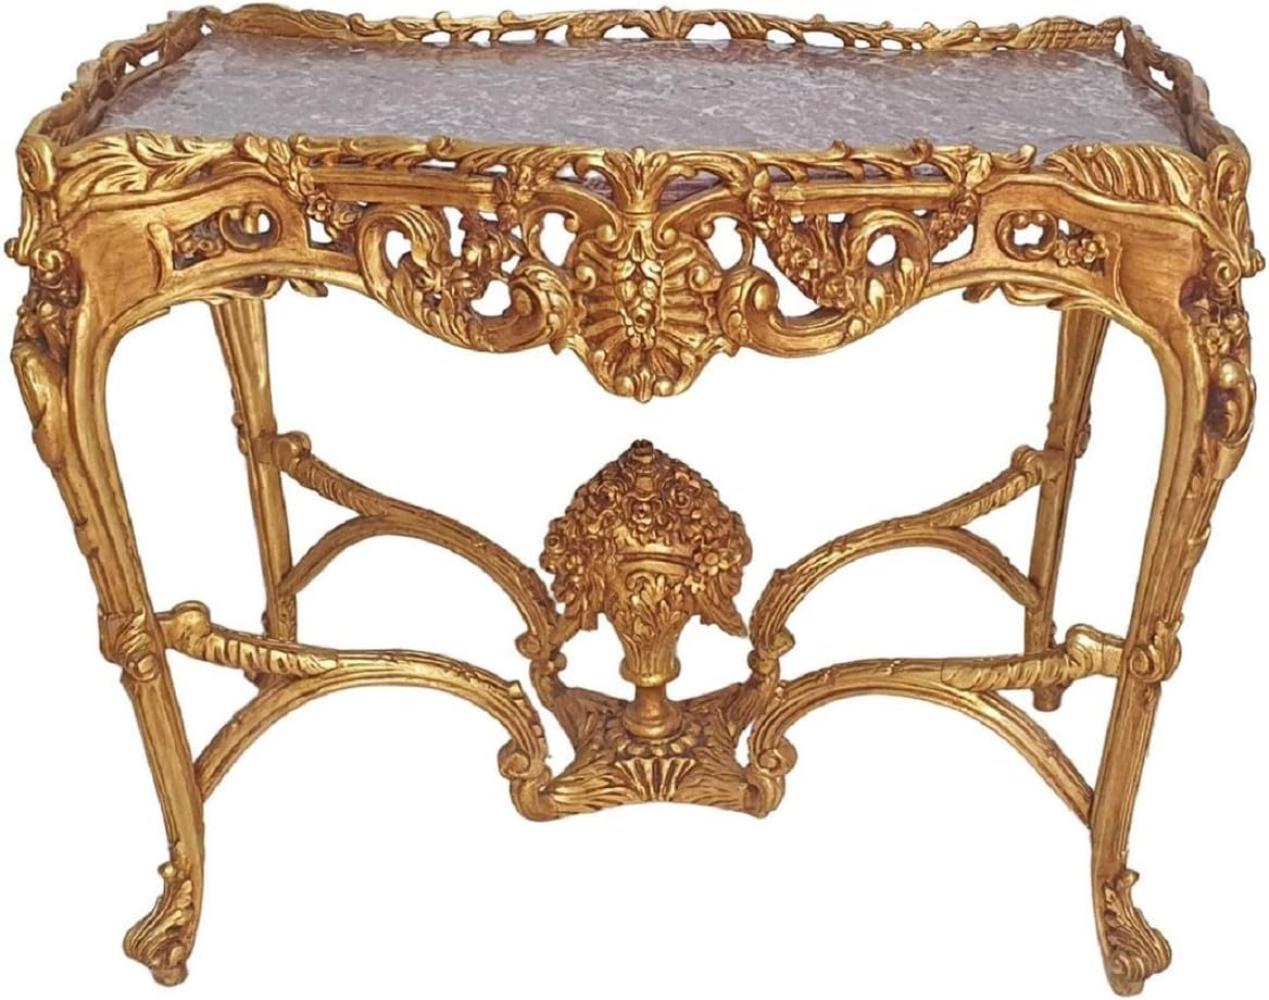 Casa Padrino Barock Beistelltisch Gold / Grau - Rechteckiger Antik Stil Tisch mit Marmorplatte - Wohnzimmer Möbel im Barockstil - Antik Stil Möbel - Barock Möbel Bild 1